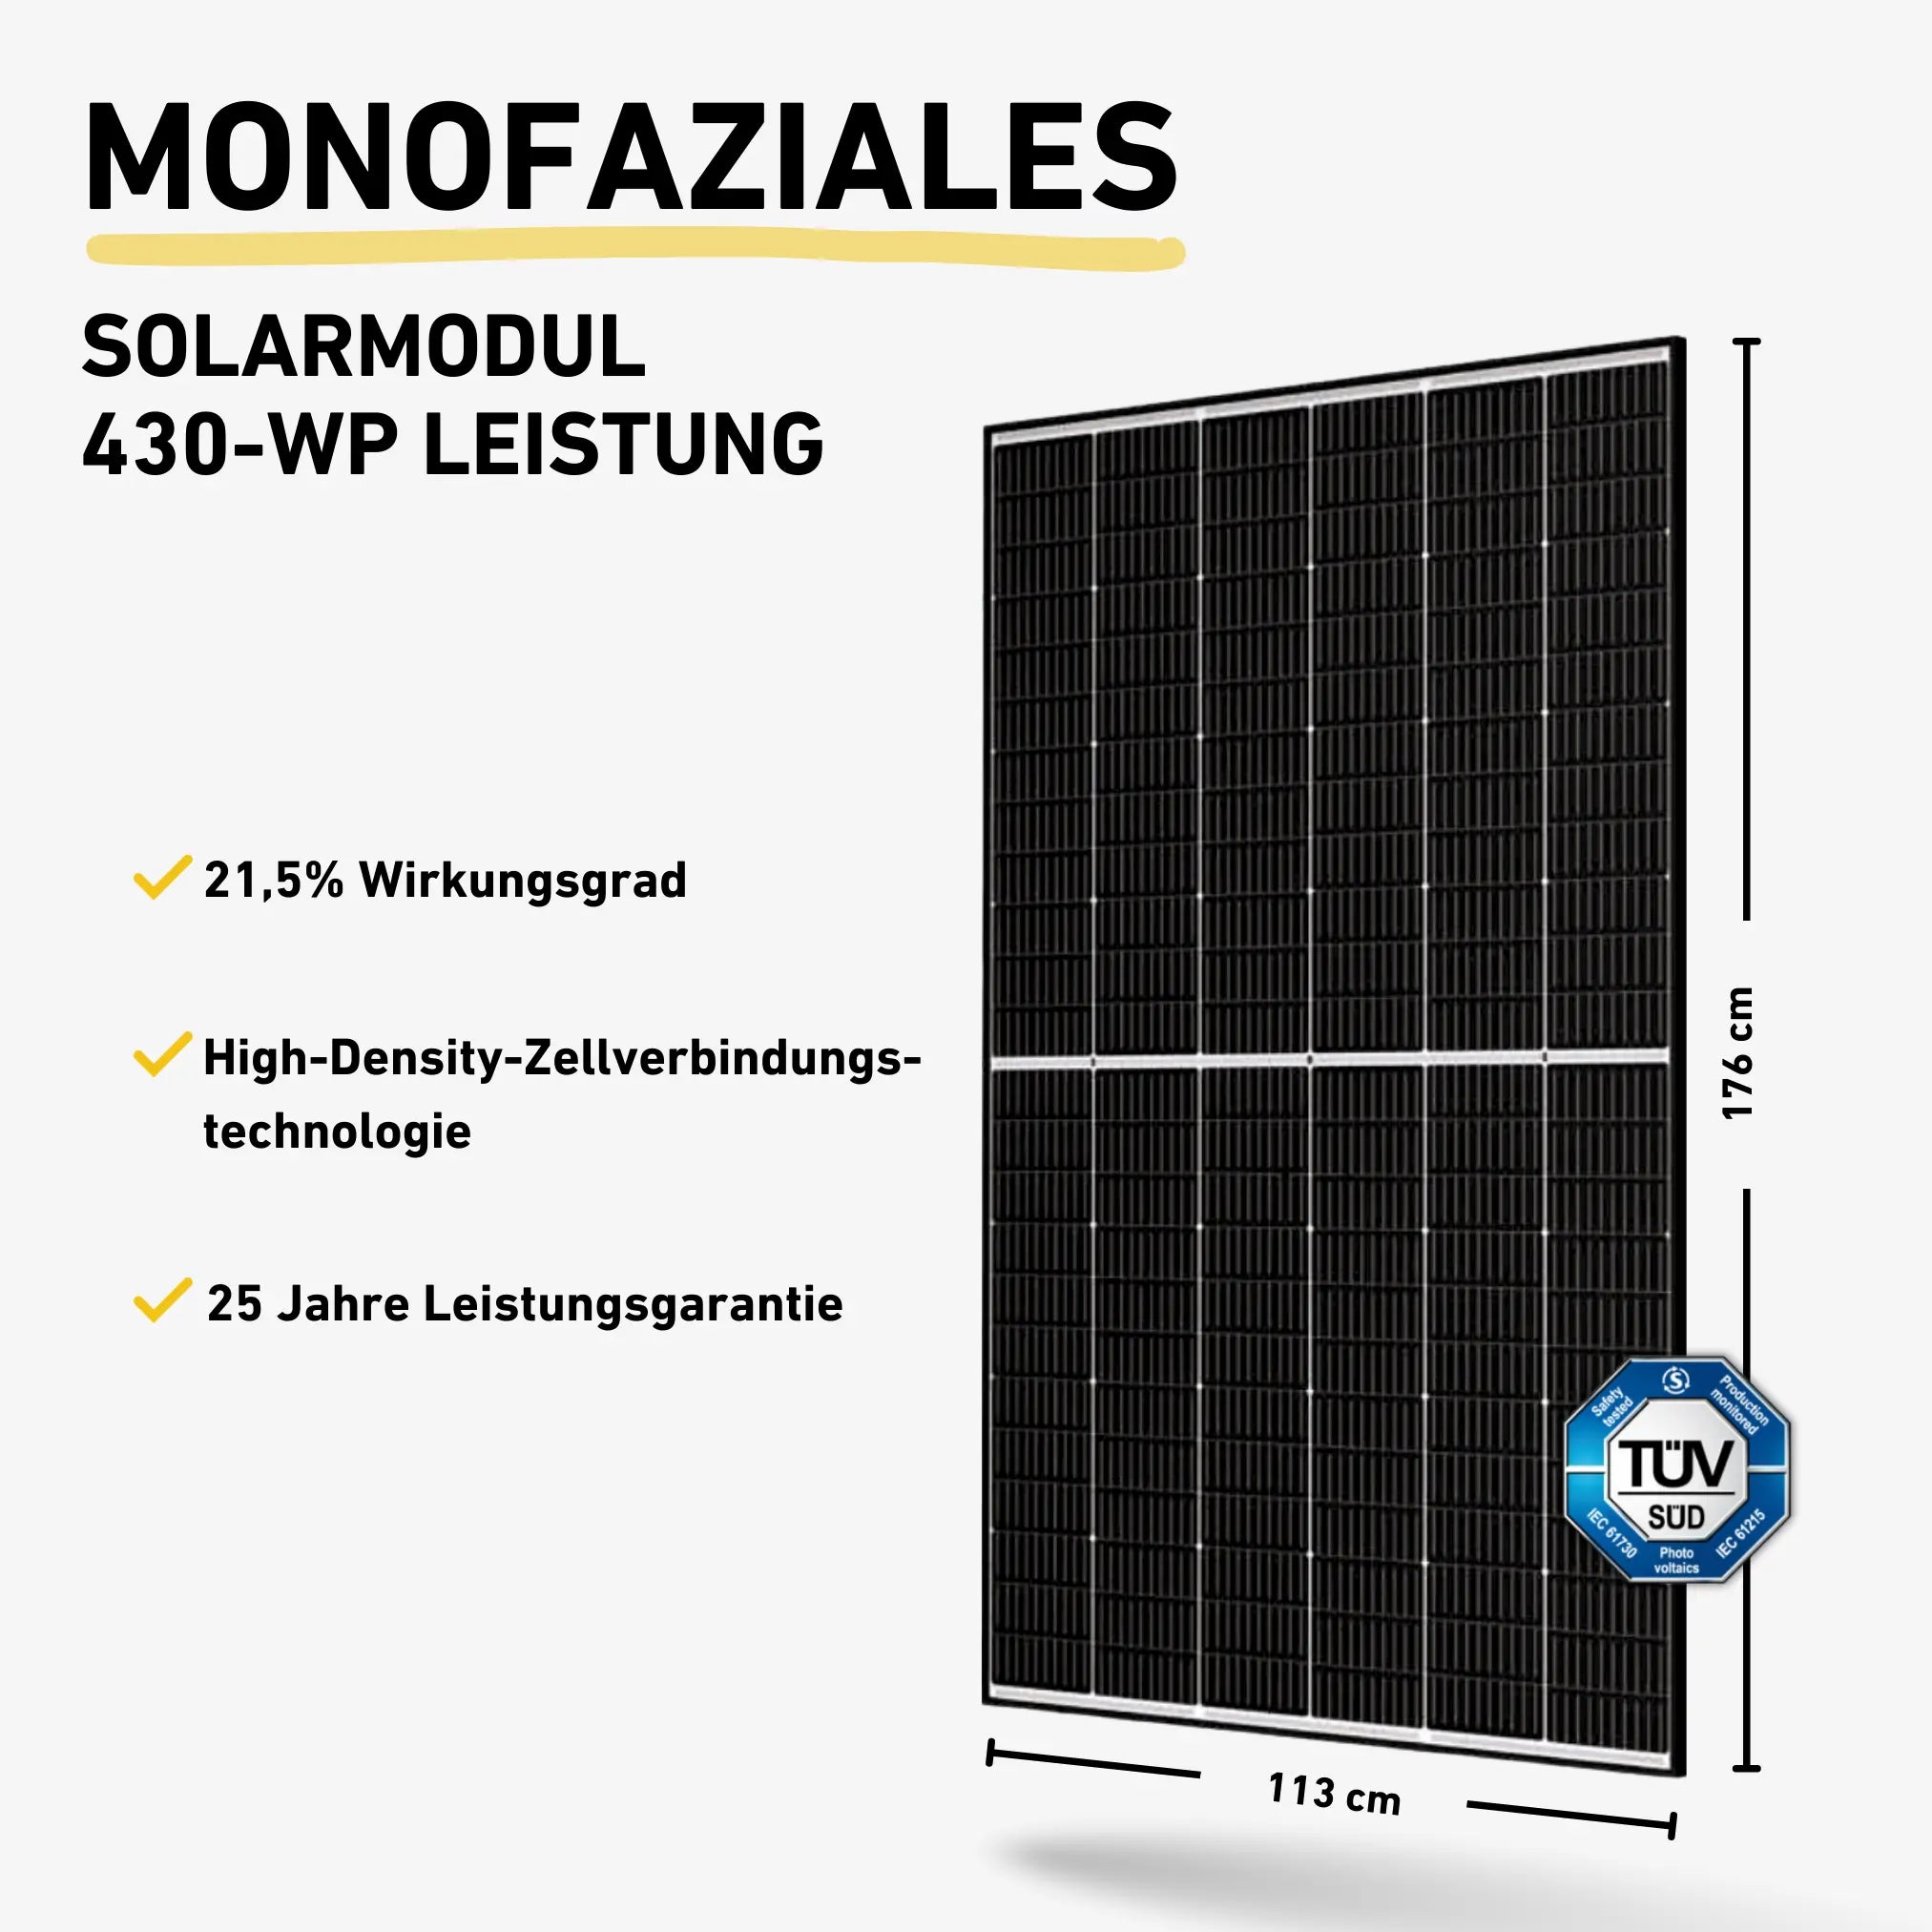 Balkonstrom Monofaziales Solarmodul 430-WP Produktbild mit weißem Hintergrund und Produkteigenschaften